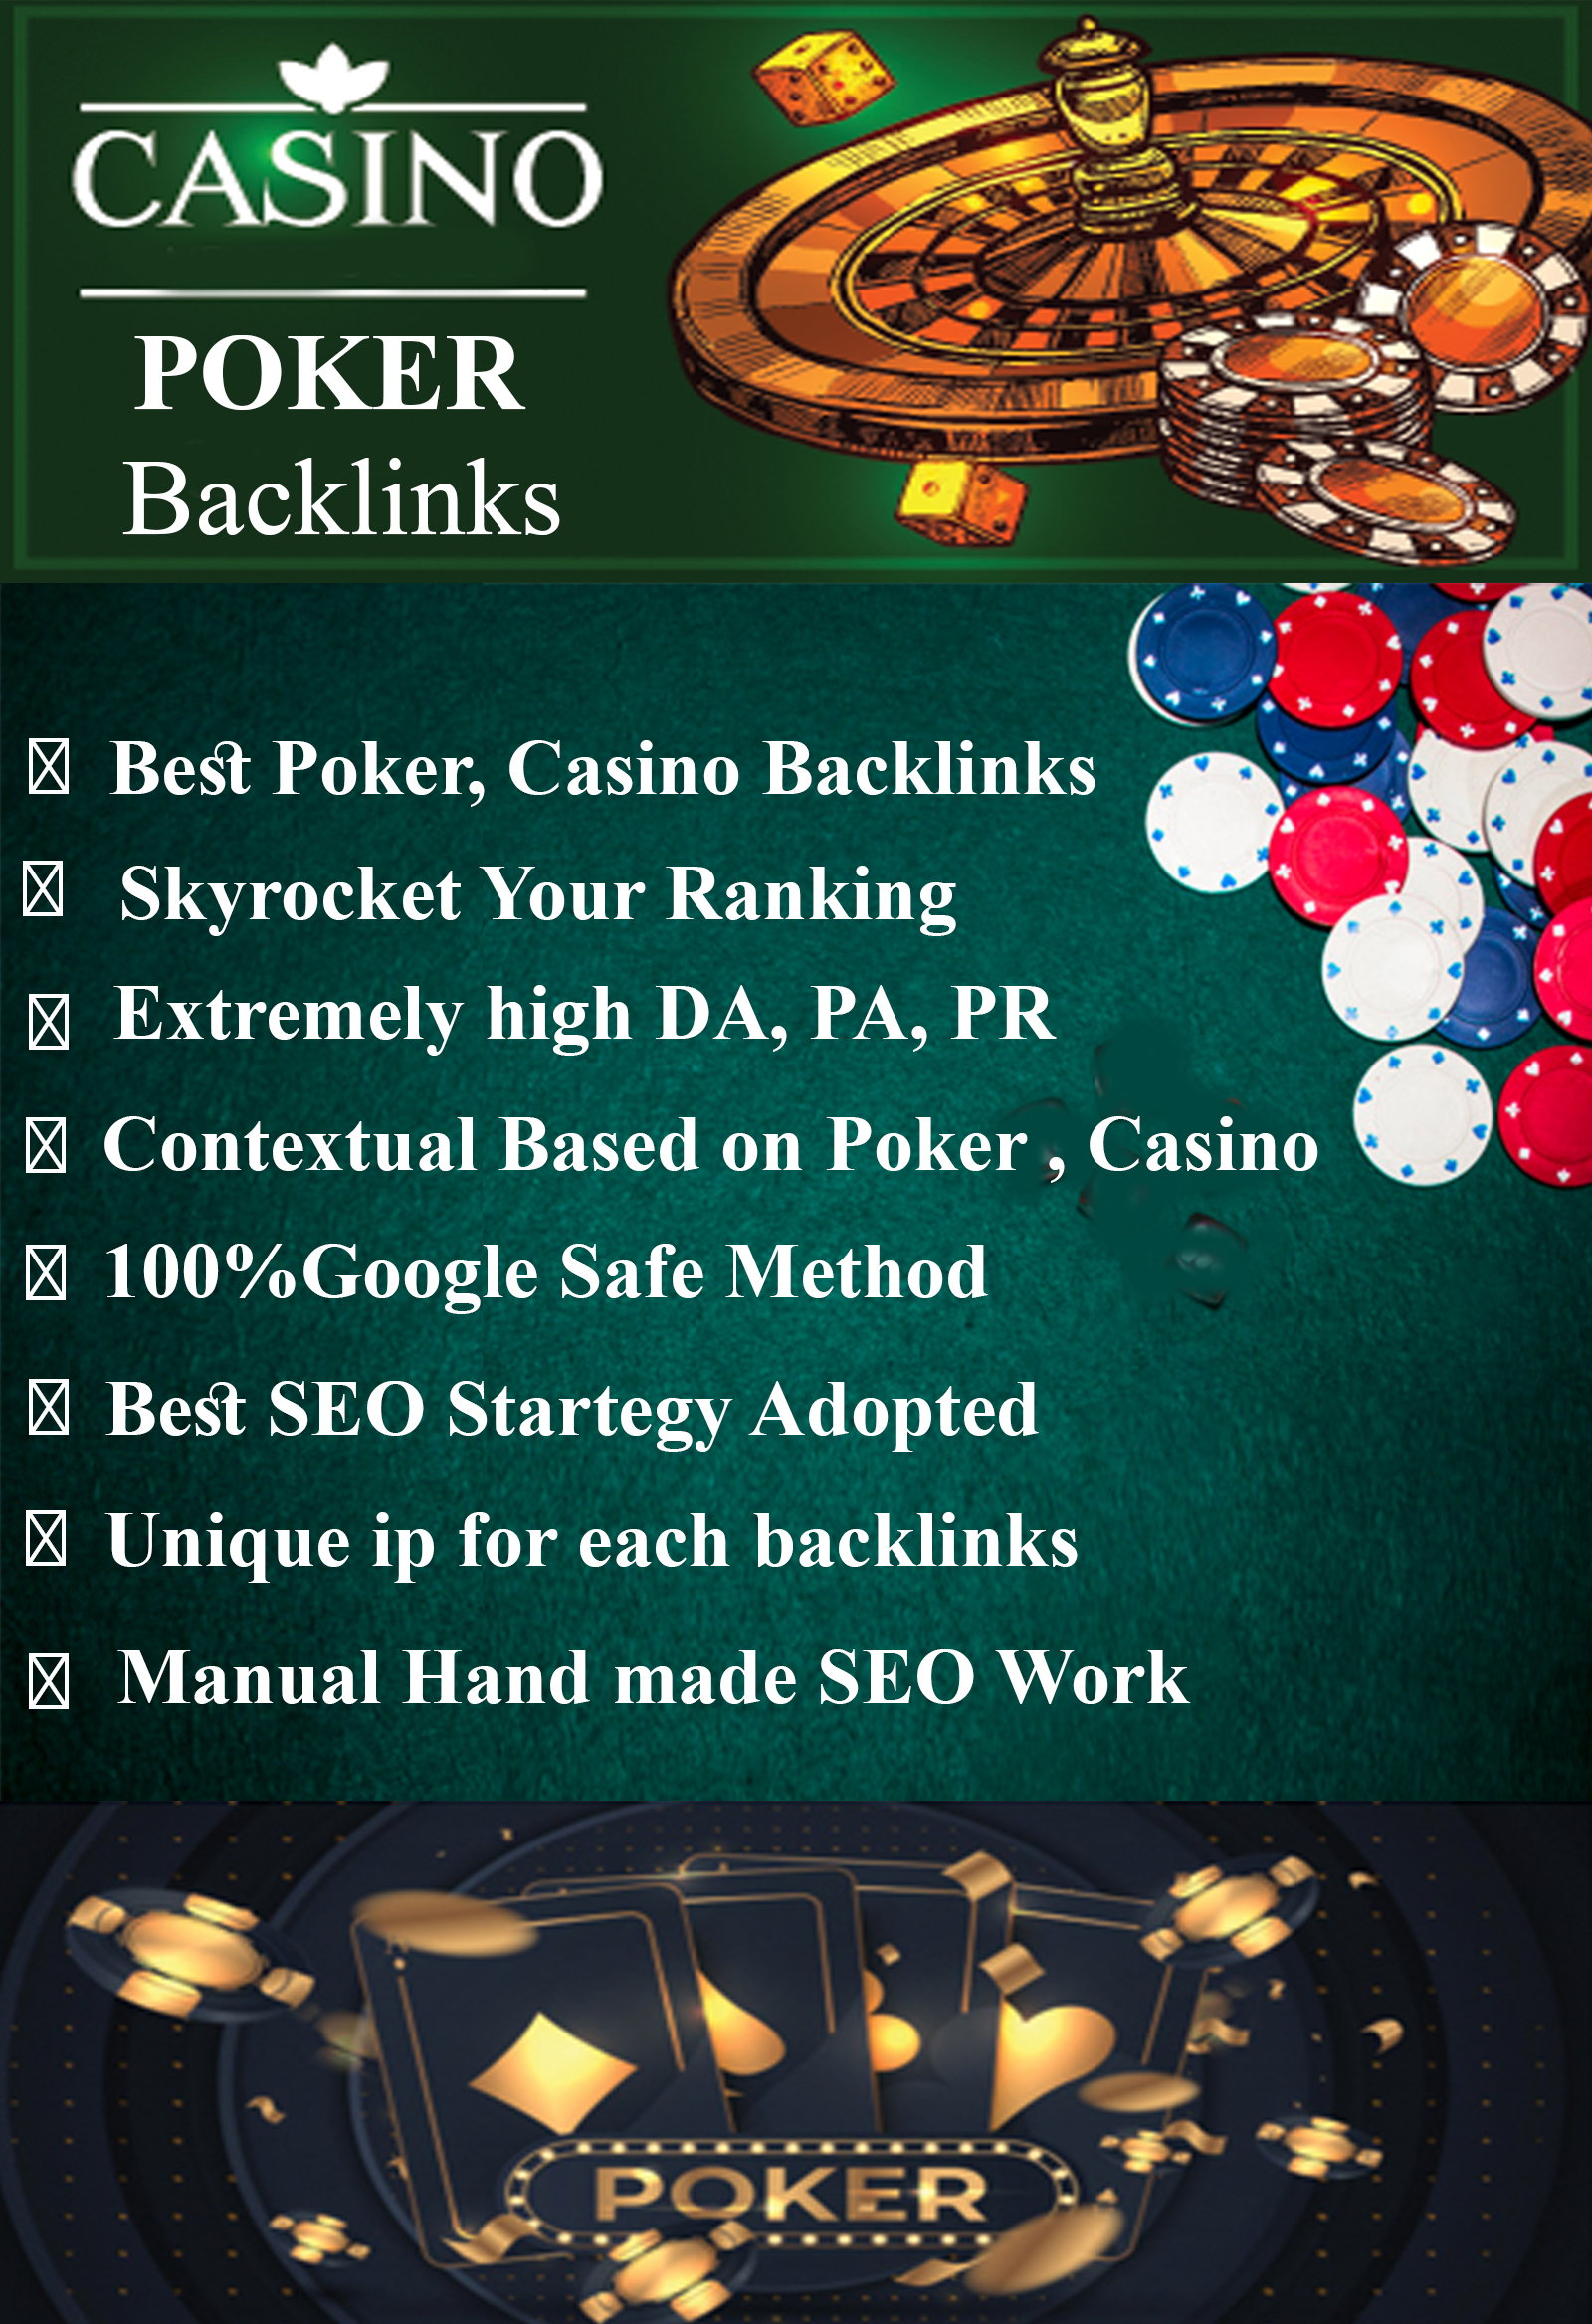 1100 Poker Backlinks, HQ PBN poker, blackjack, casino and gambling backlinks